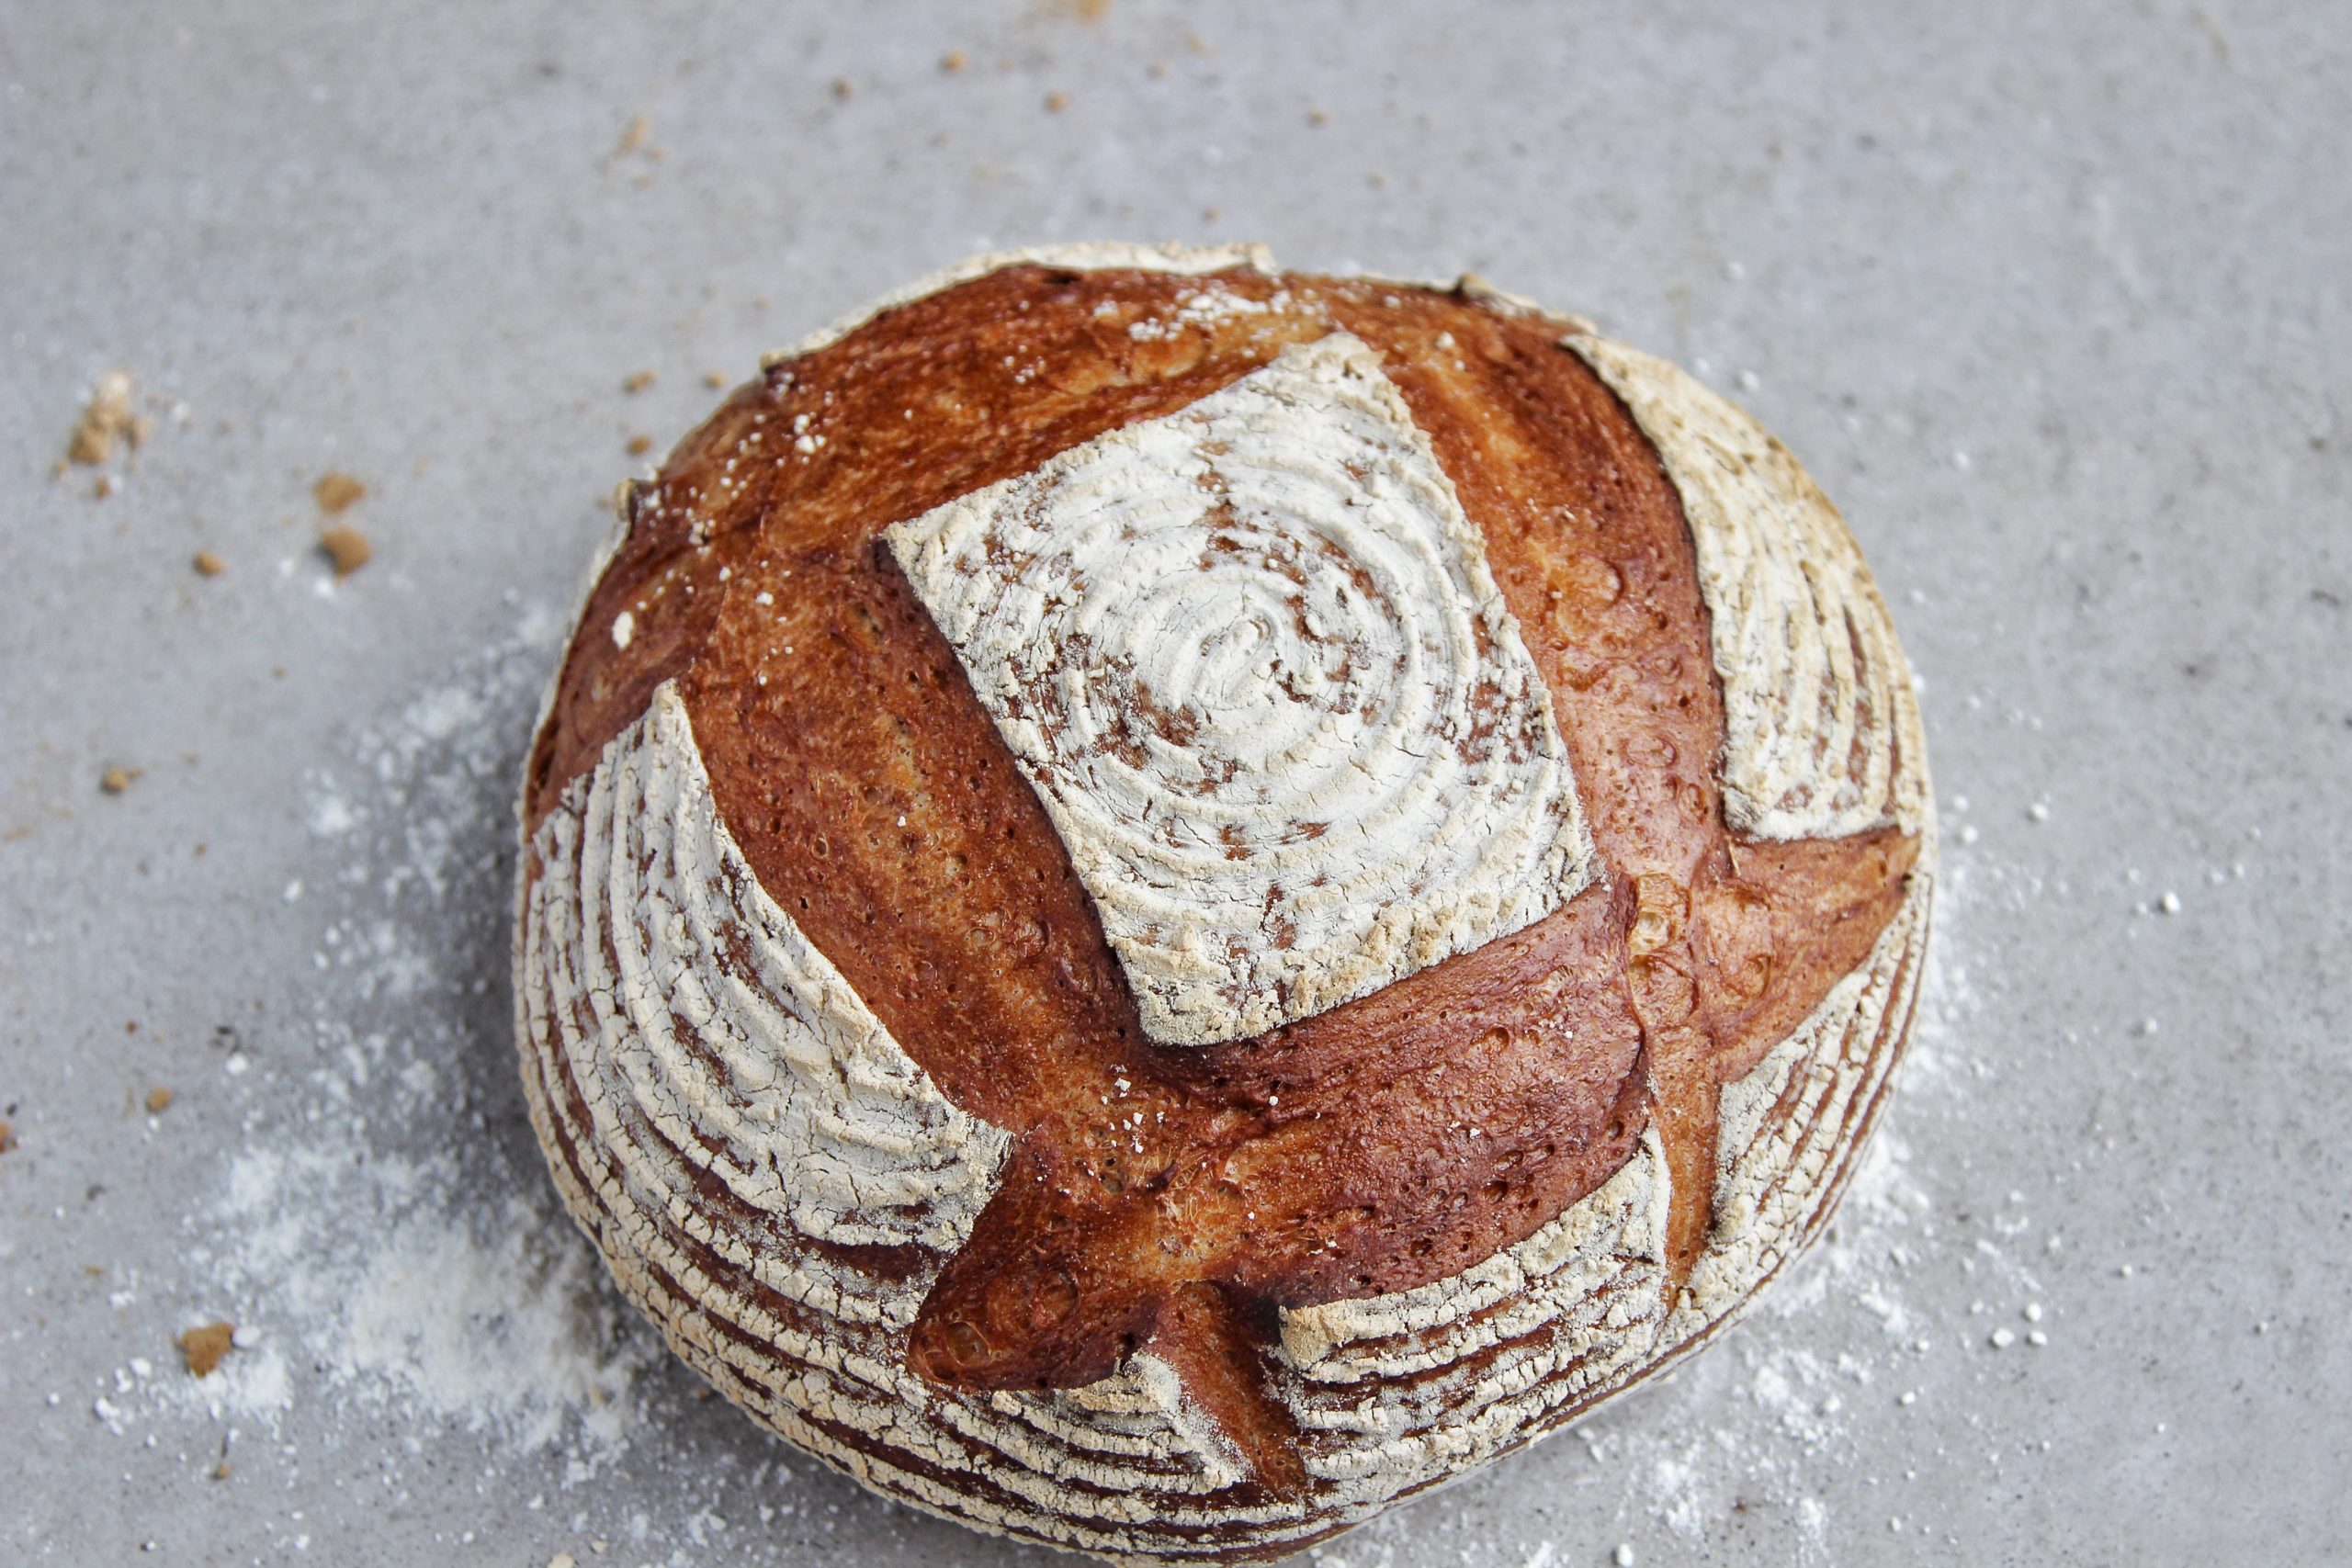 Sourdough Bread Recipe